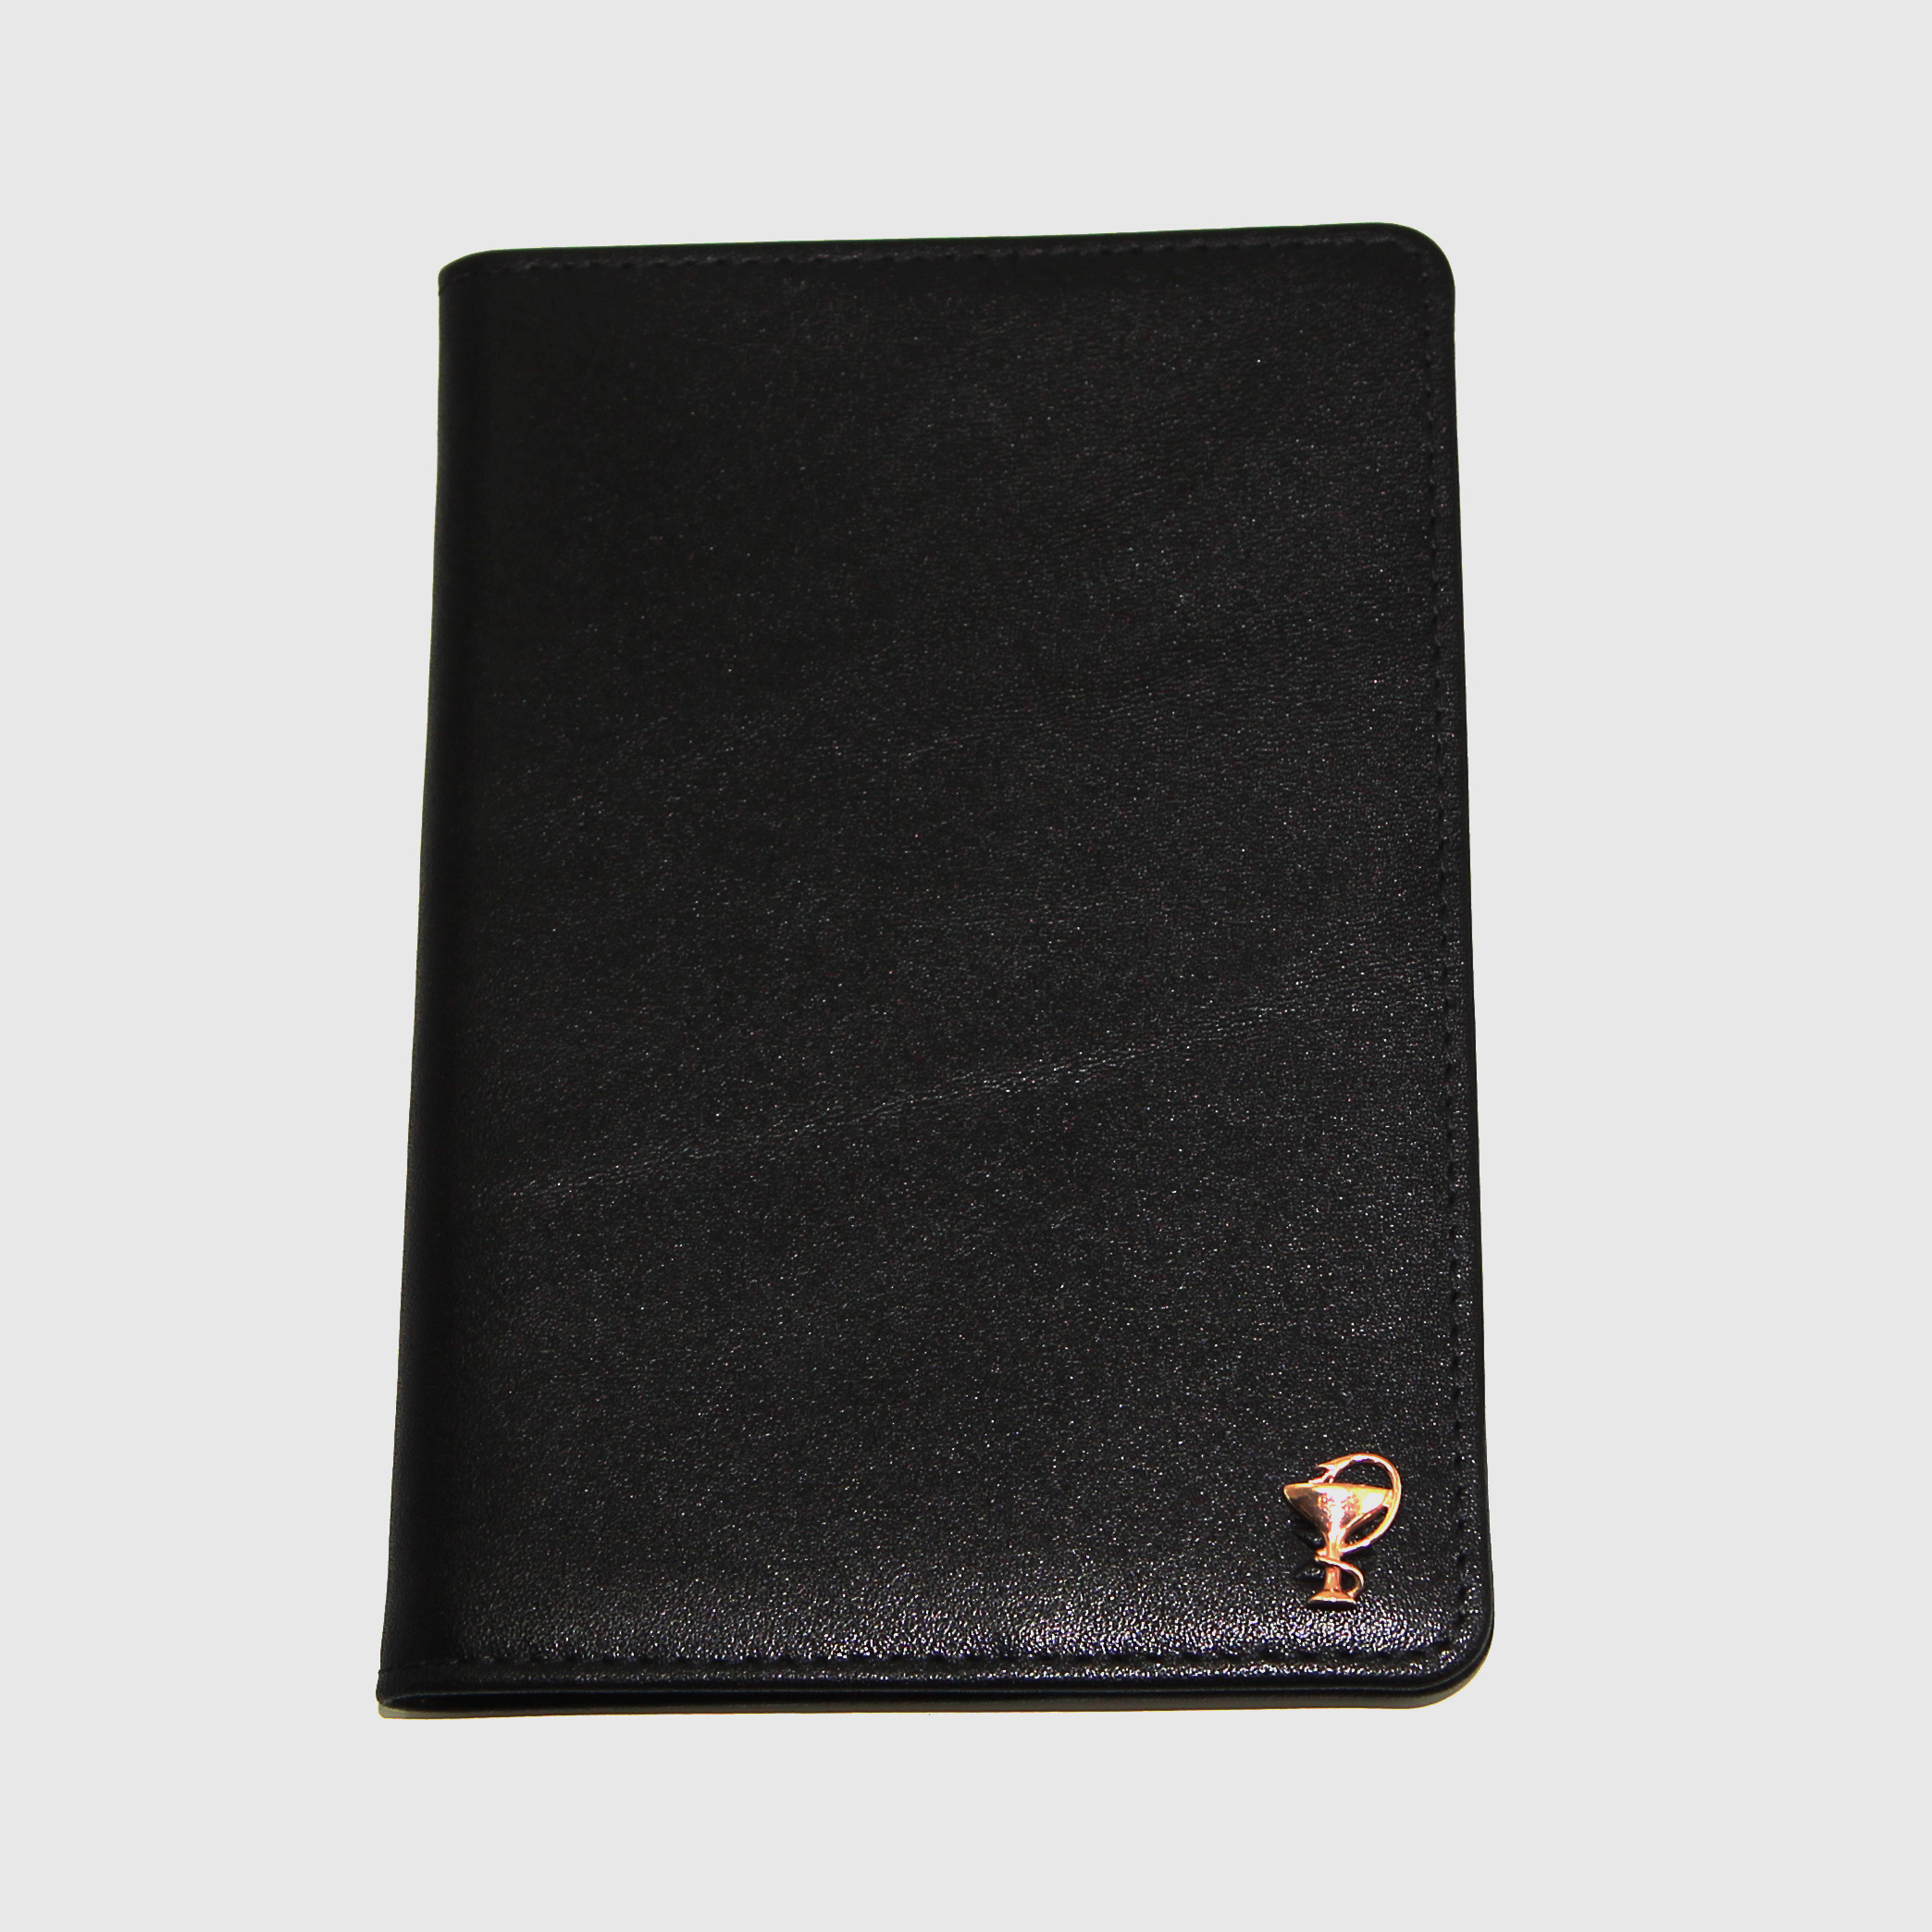 Черная кожаная обложка для паспорта для врачей SOLTAN 010 21 01 со вставкой из серебраФото 25014-05.jpg